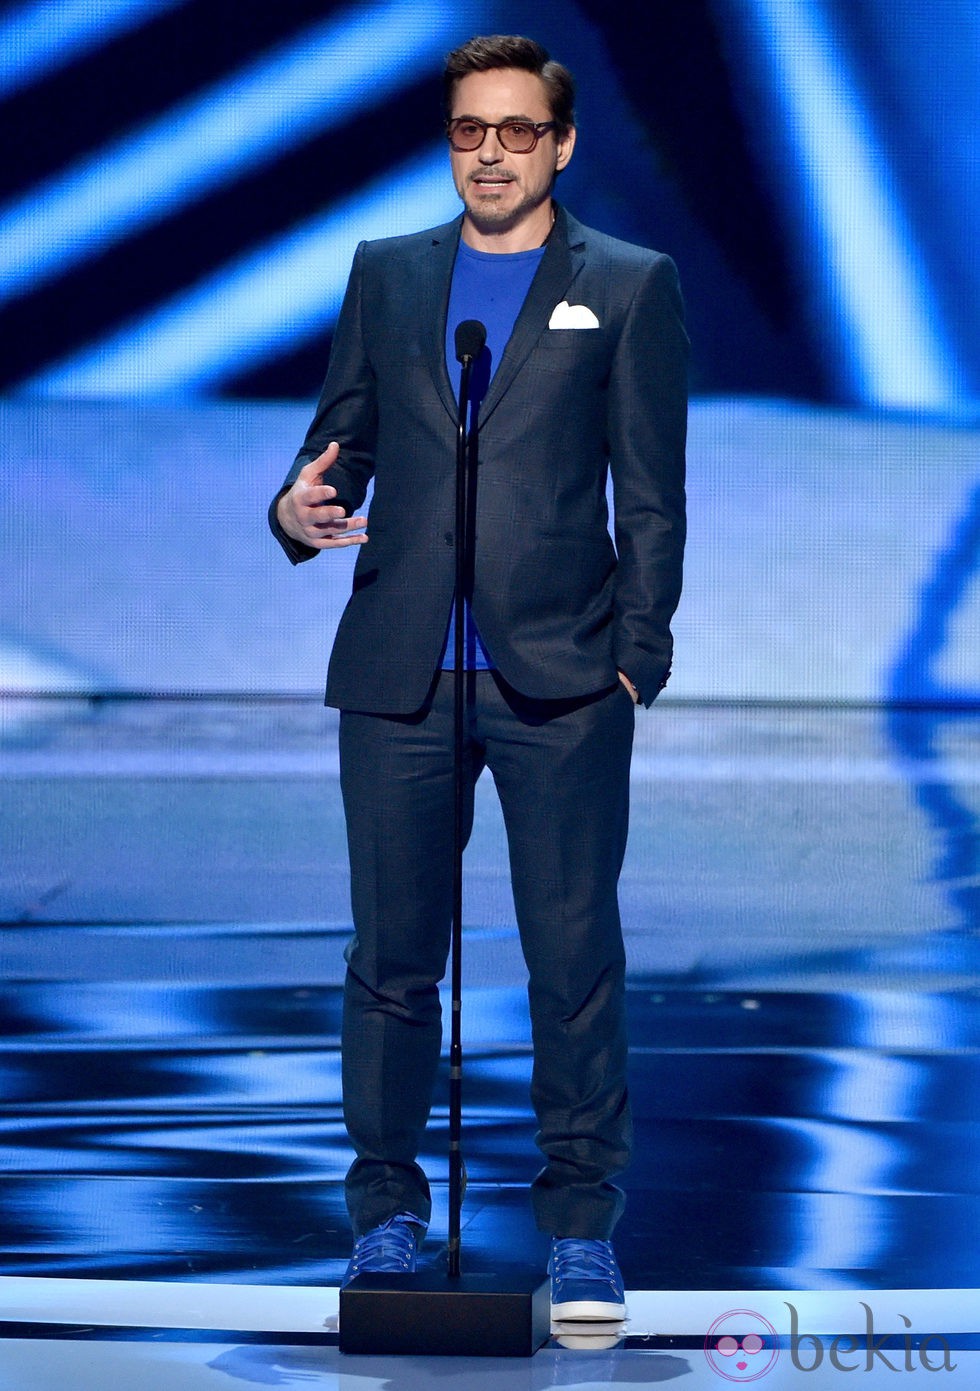 Robert Downey Jr. en los People's Choice Awards 2015